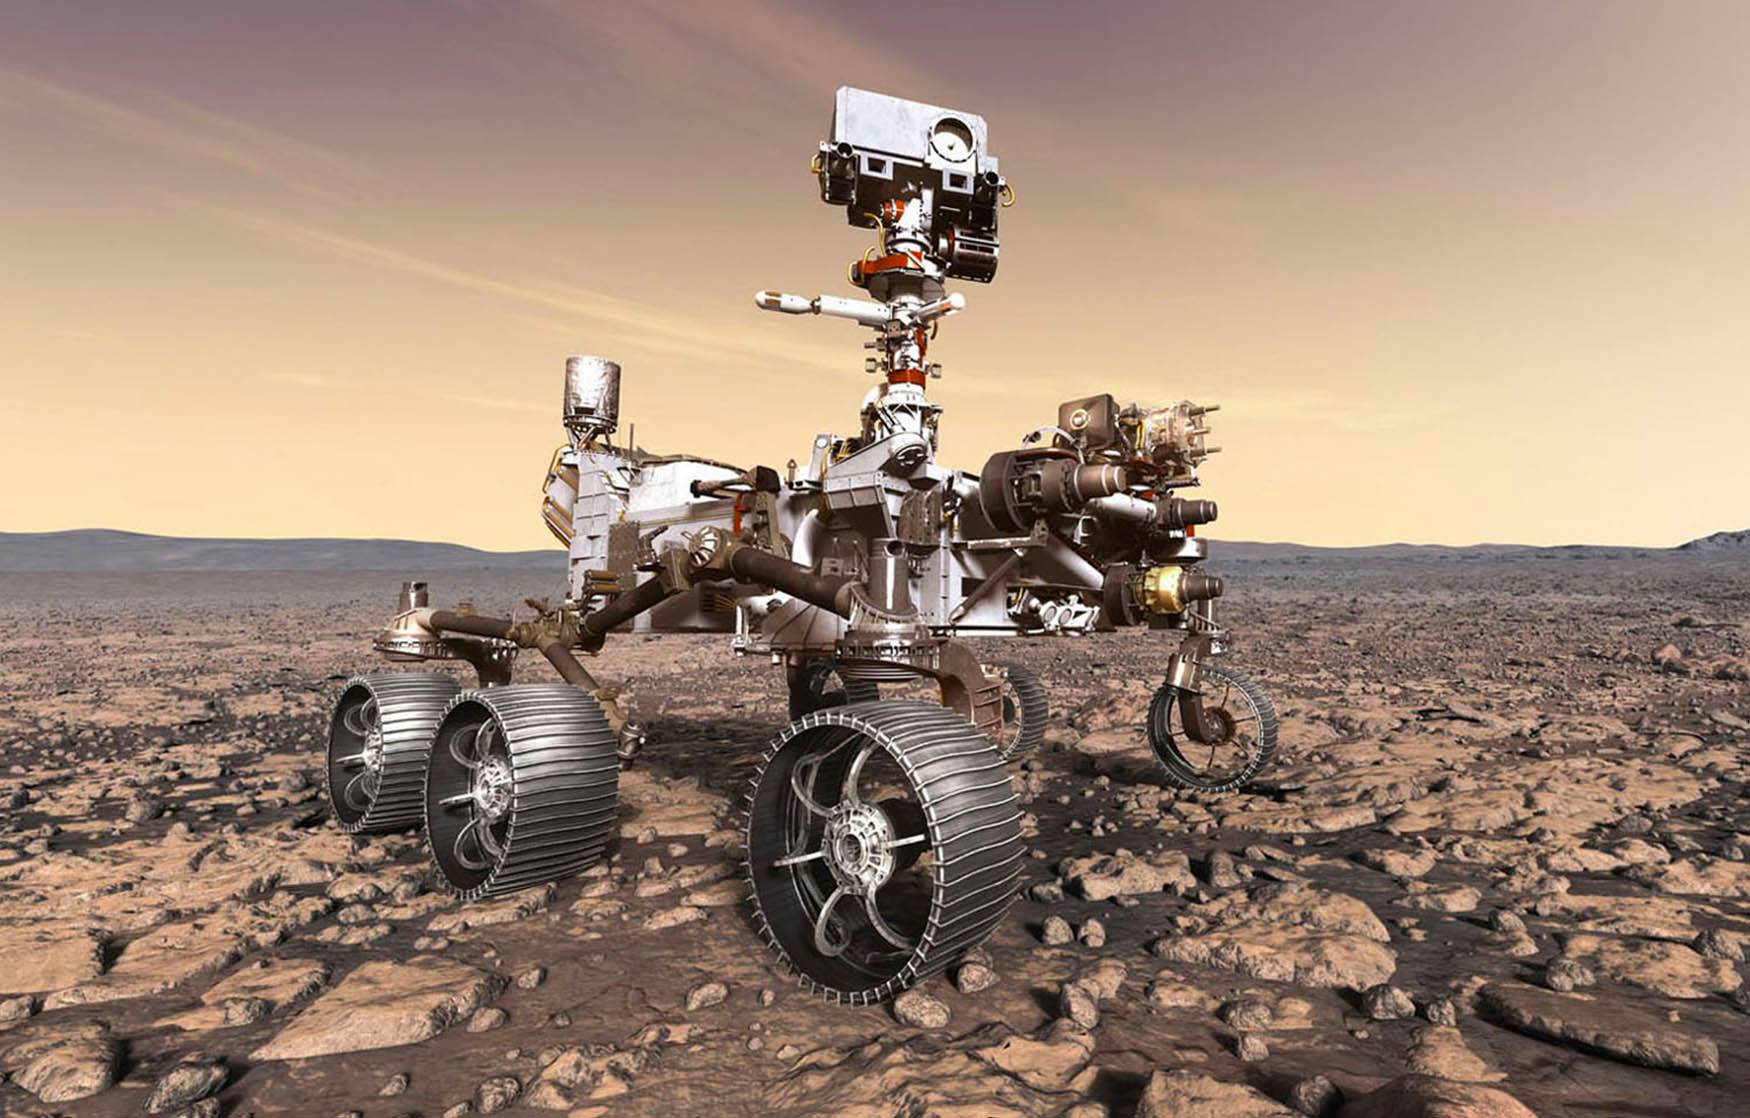 The Perseverance rover factual flexed for the entire hot Martian babes